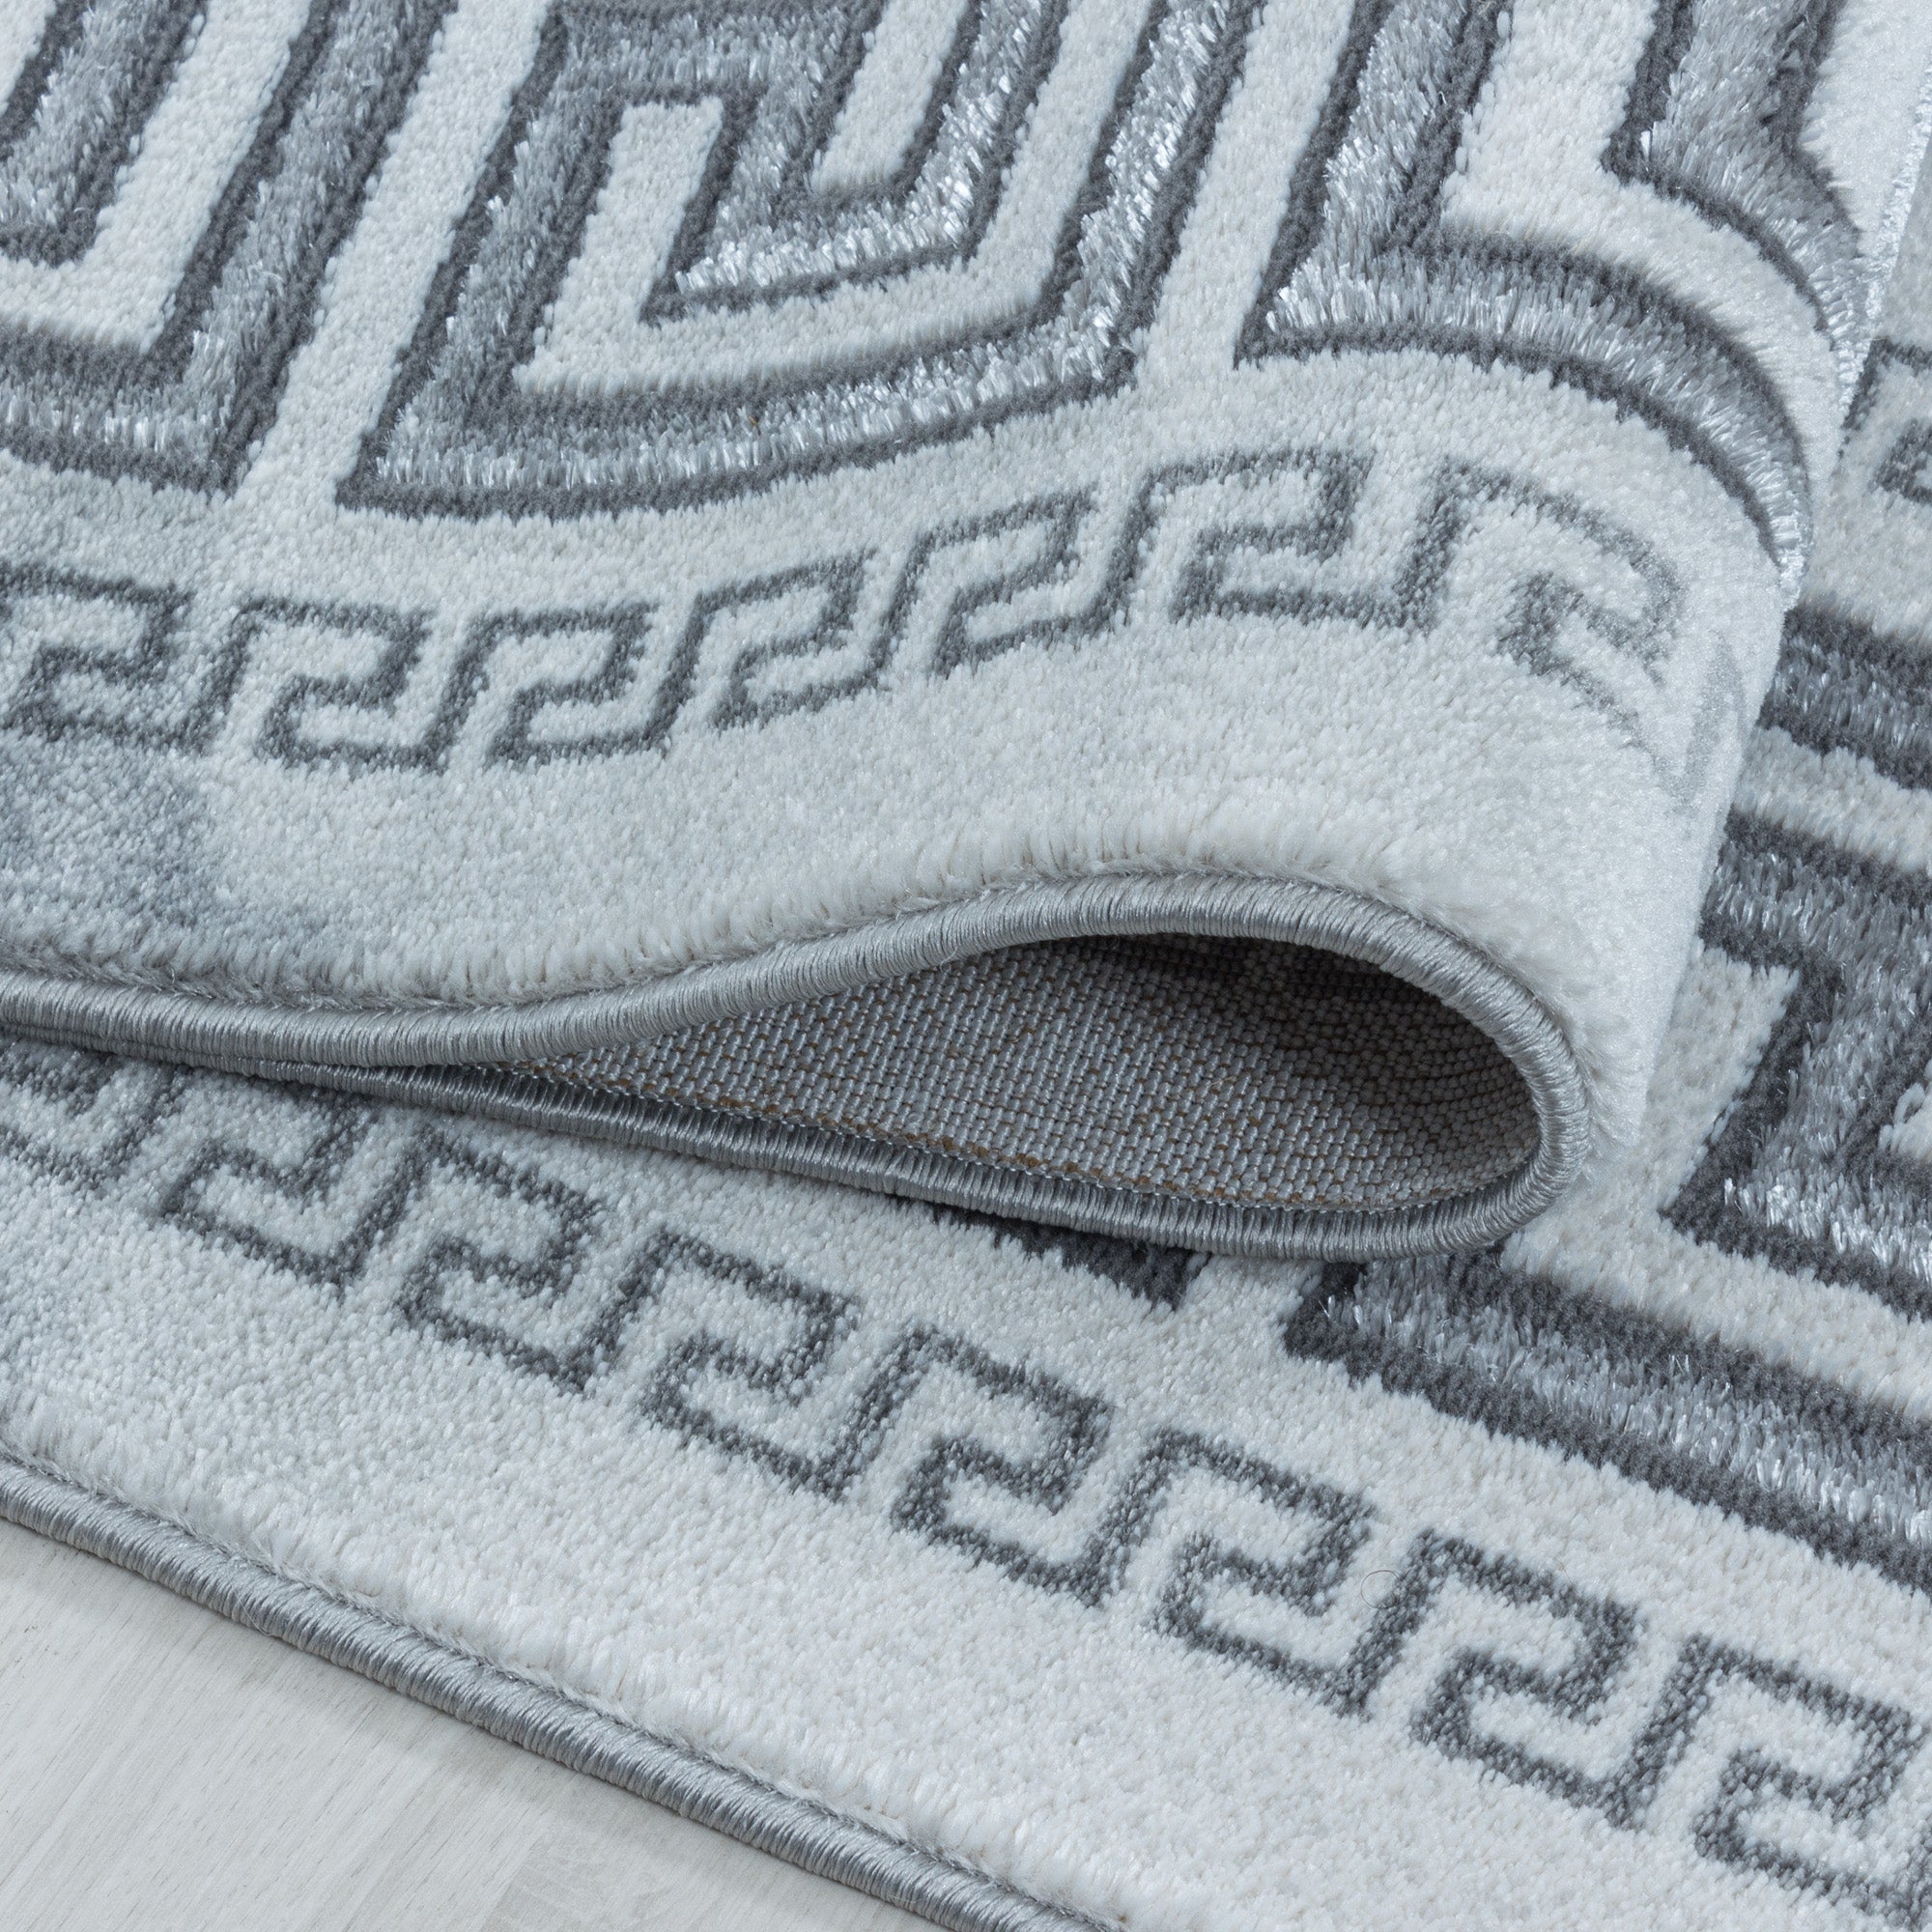 Kurzflor Design Teppich Wohnzimmerteppich Marmor Muster Bordüre Antik Silber